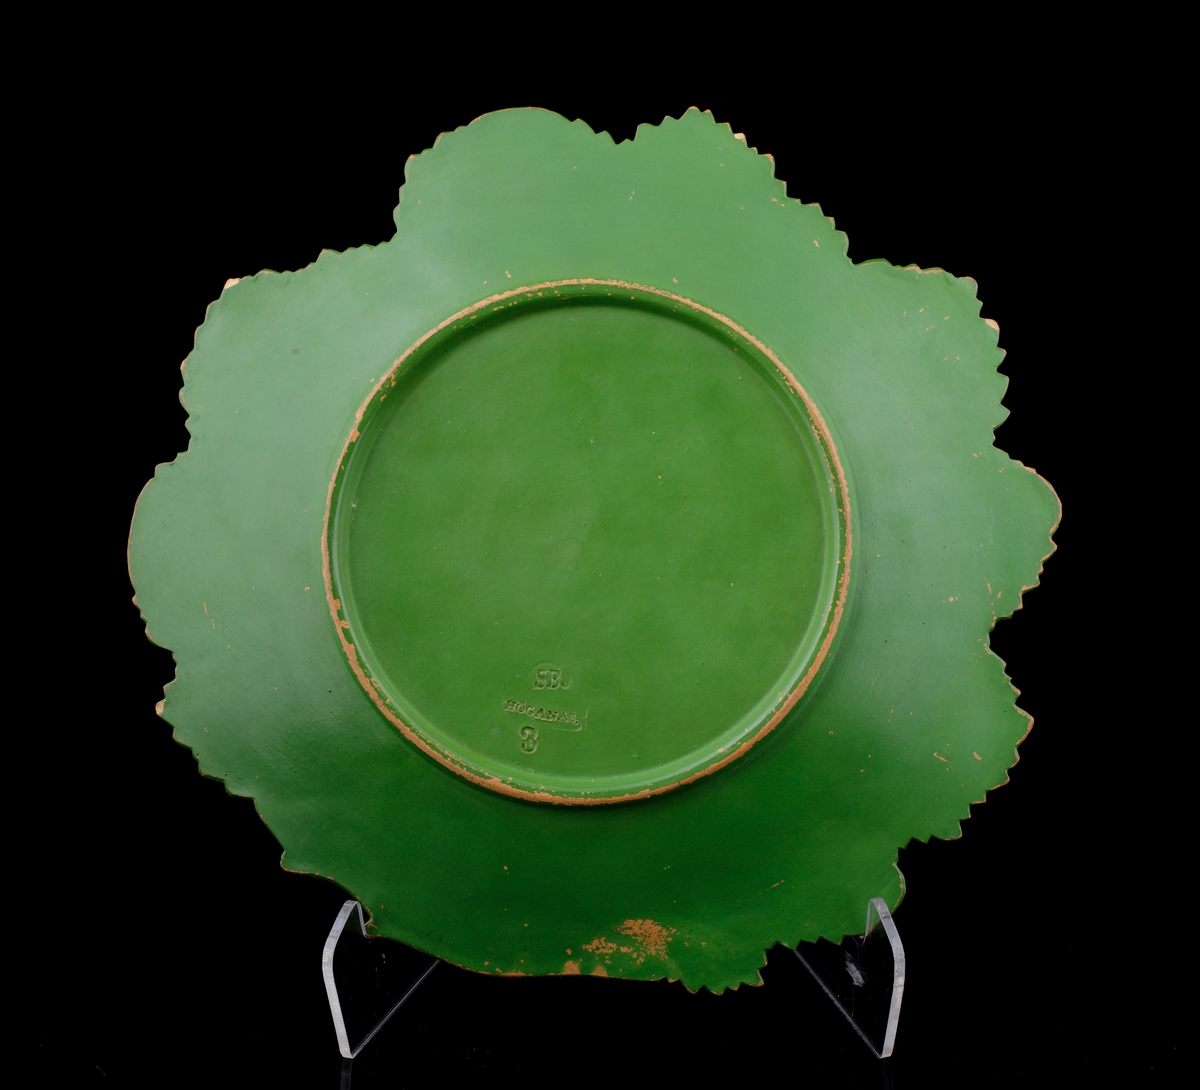 Fruktfat av keramik. 
Naturalistiskt utformat som fyra vinblad i mörkgrön glasyr.